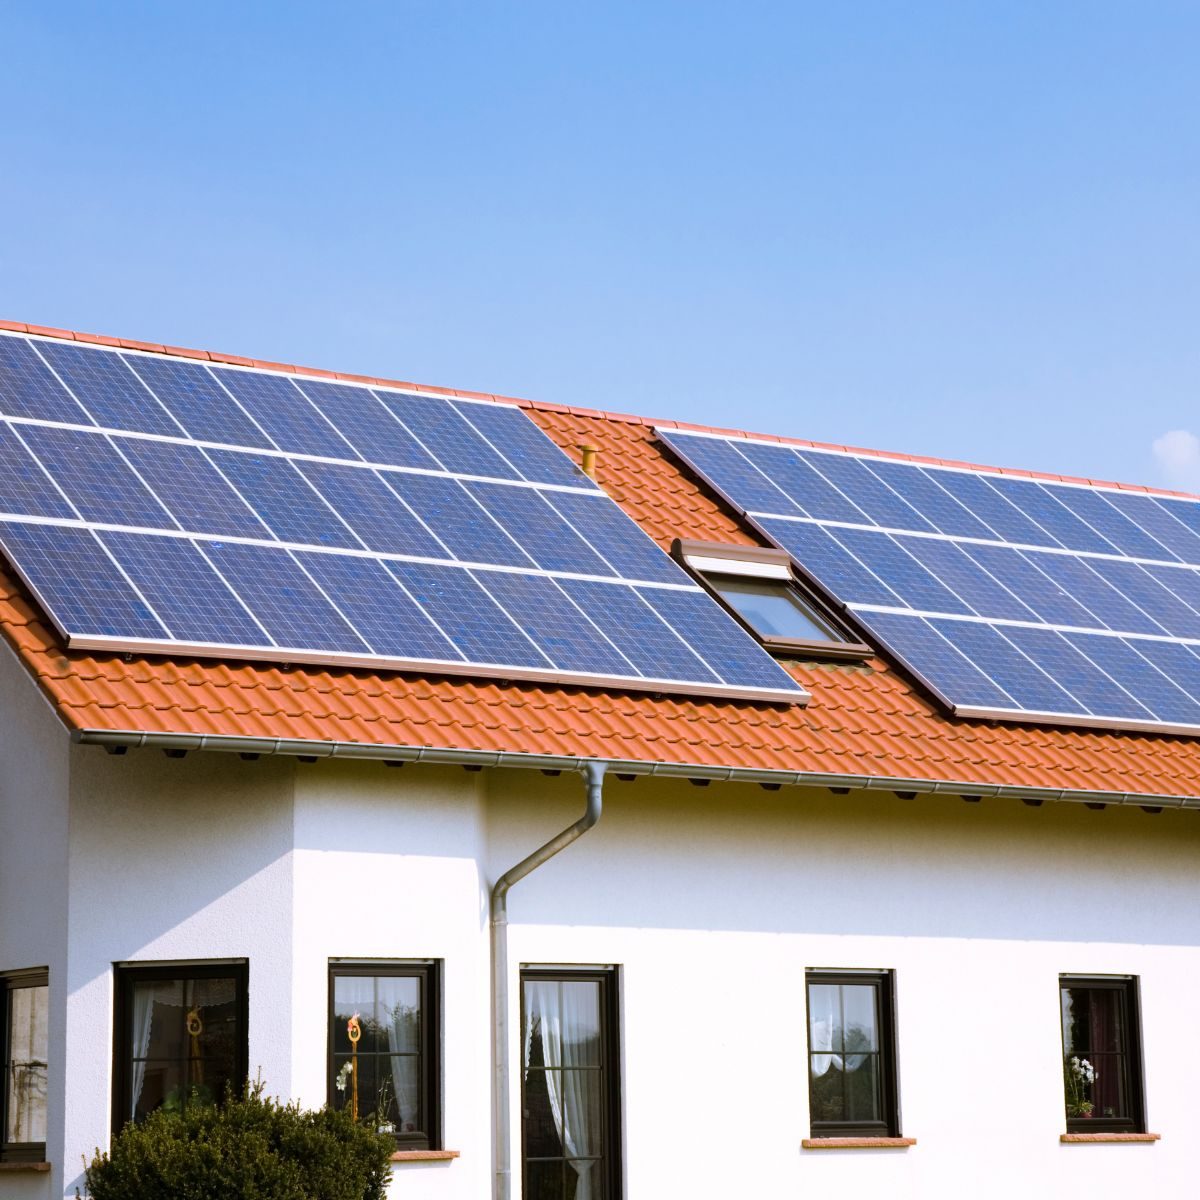 Instalación Solar en tejado